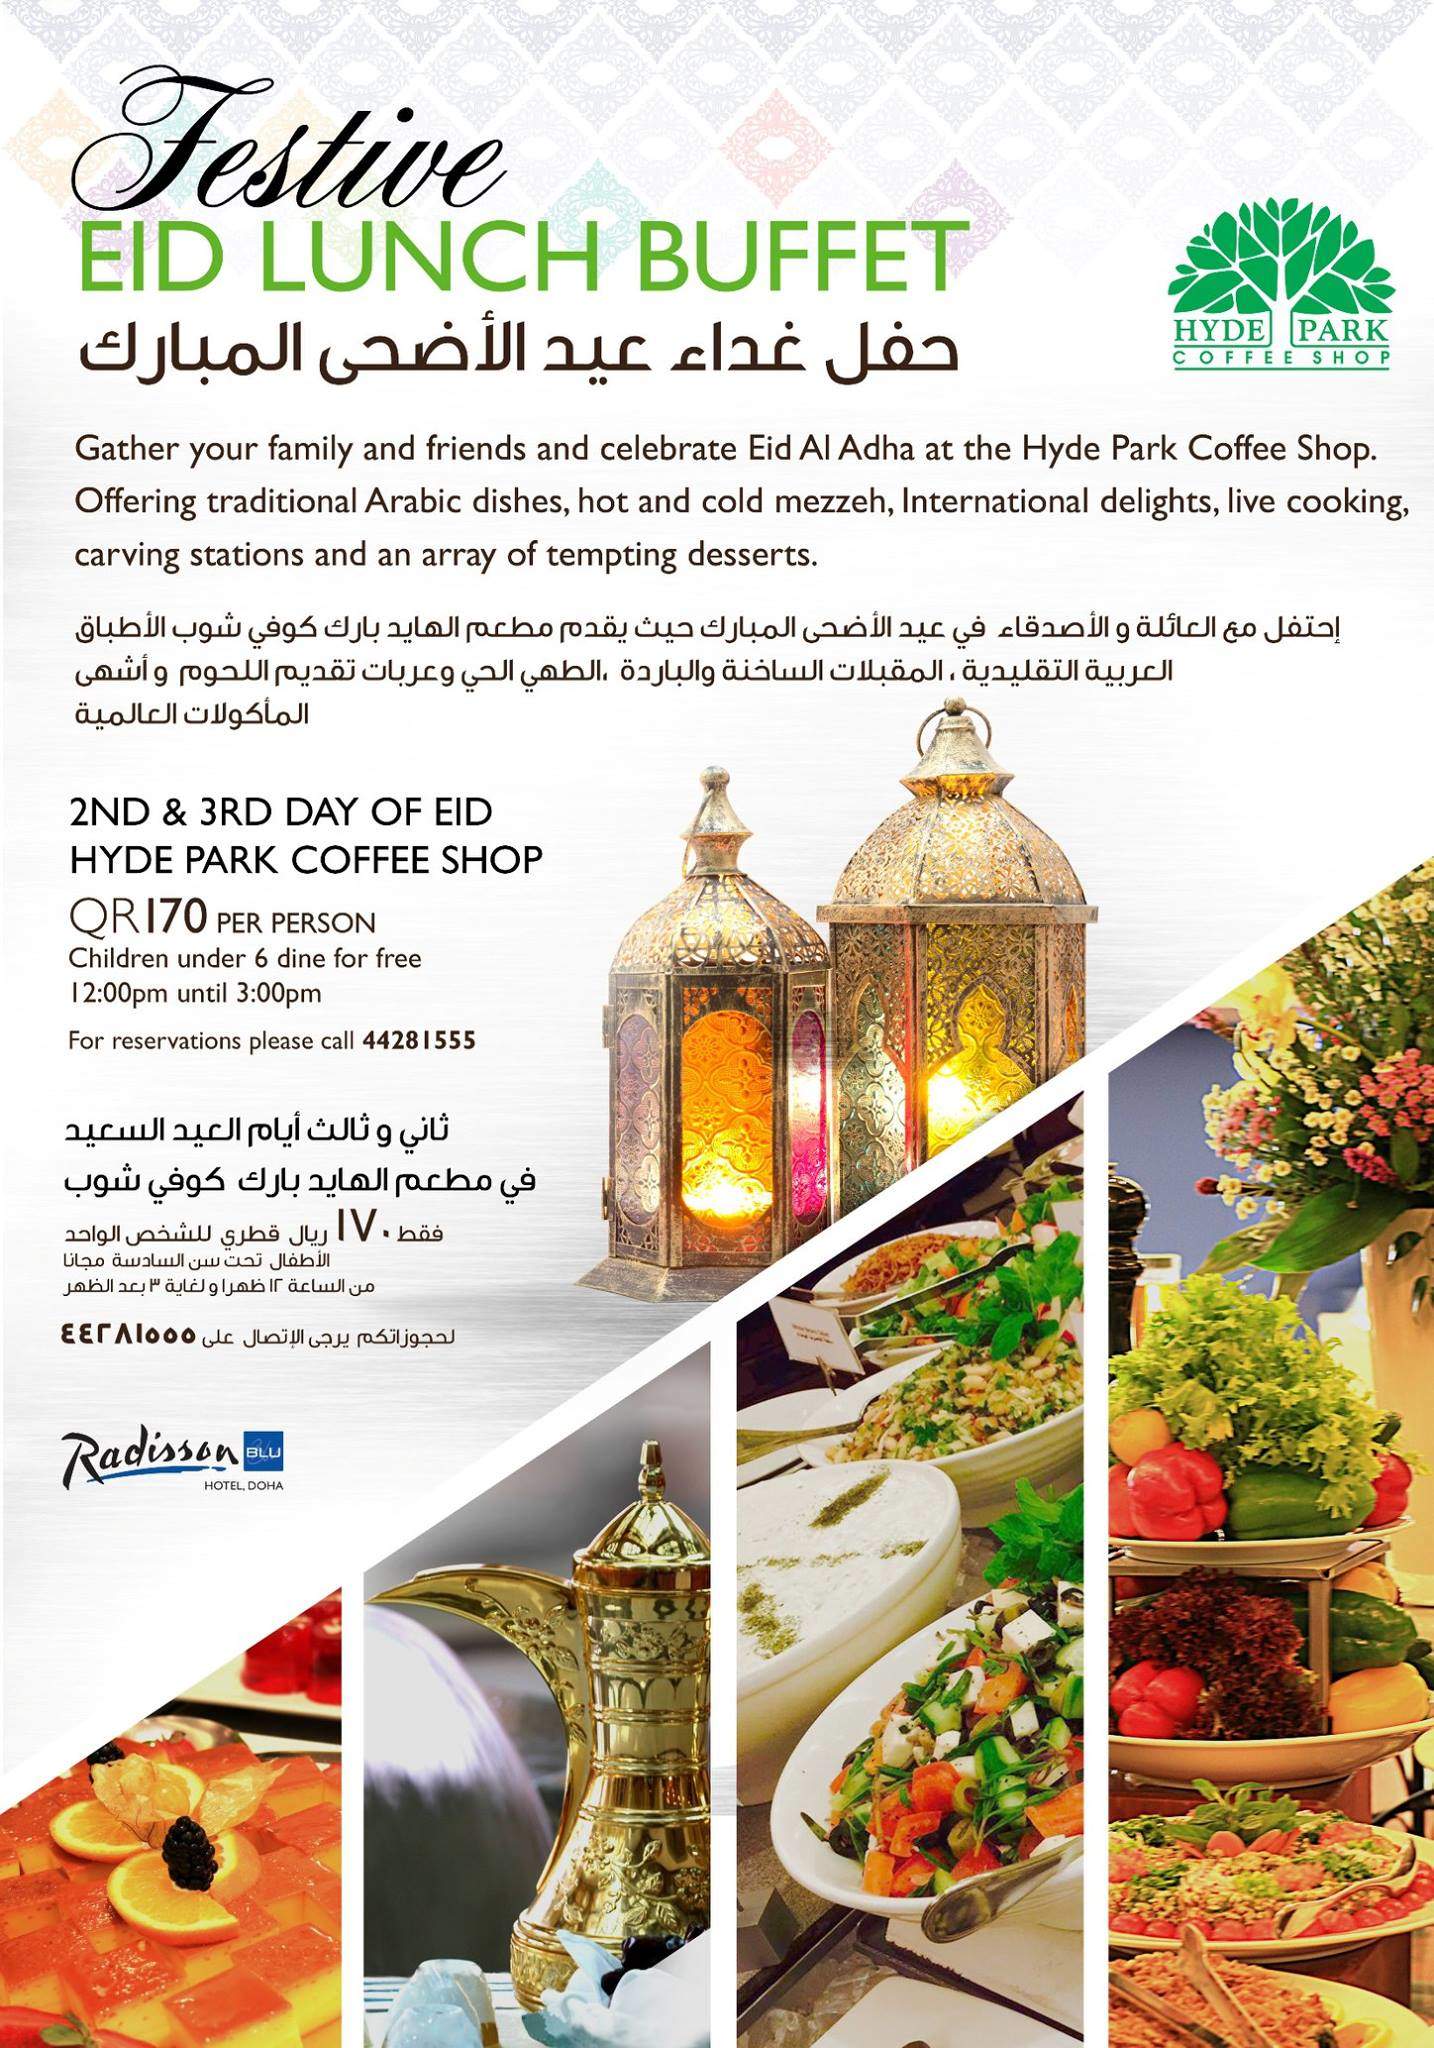 eid-buffet-doha-qatar-radisson-blu-lunch